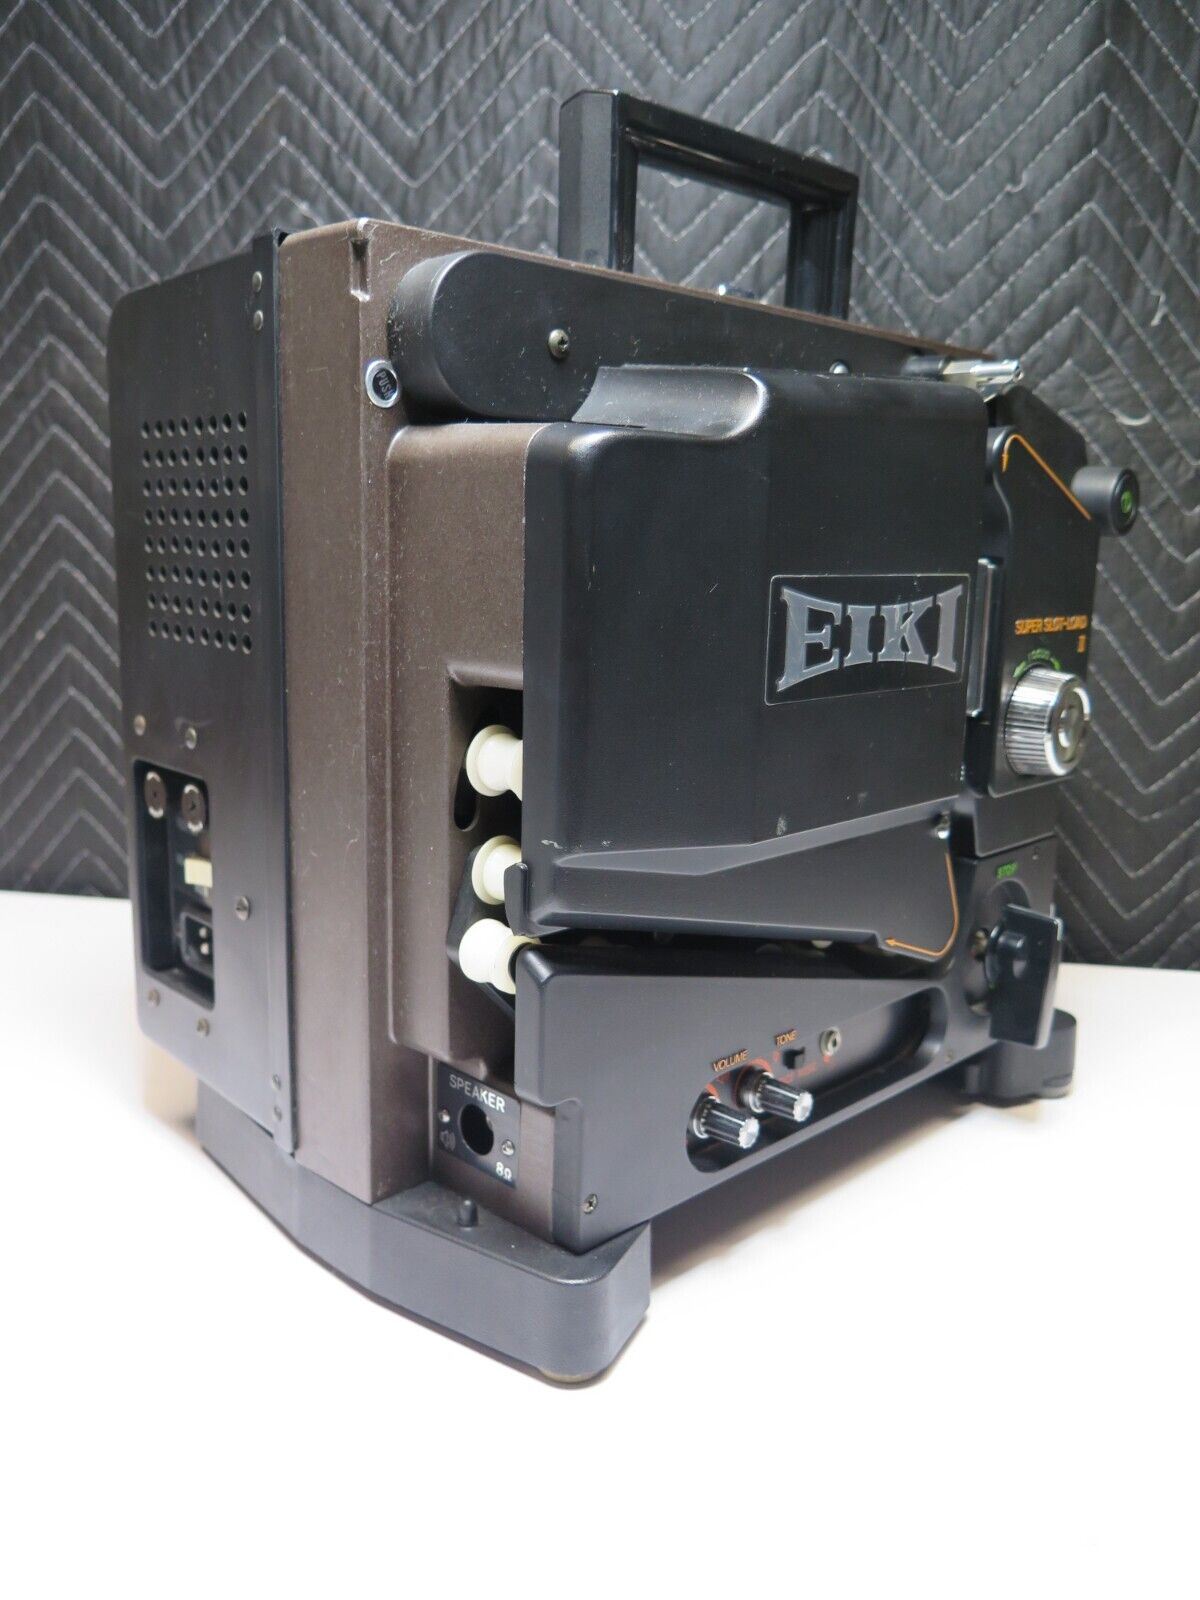 Eiki SL-0ML 16mm Film Super Slot-Load II Sound Projector SL-0